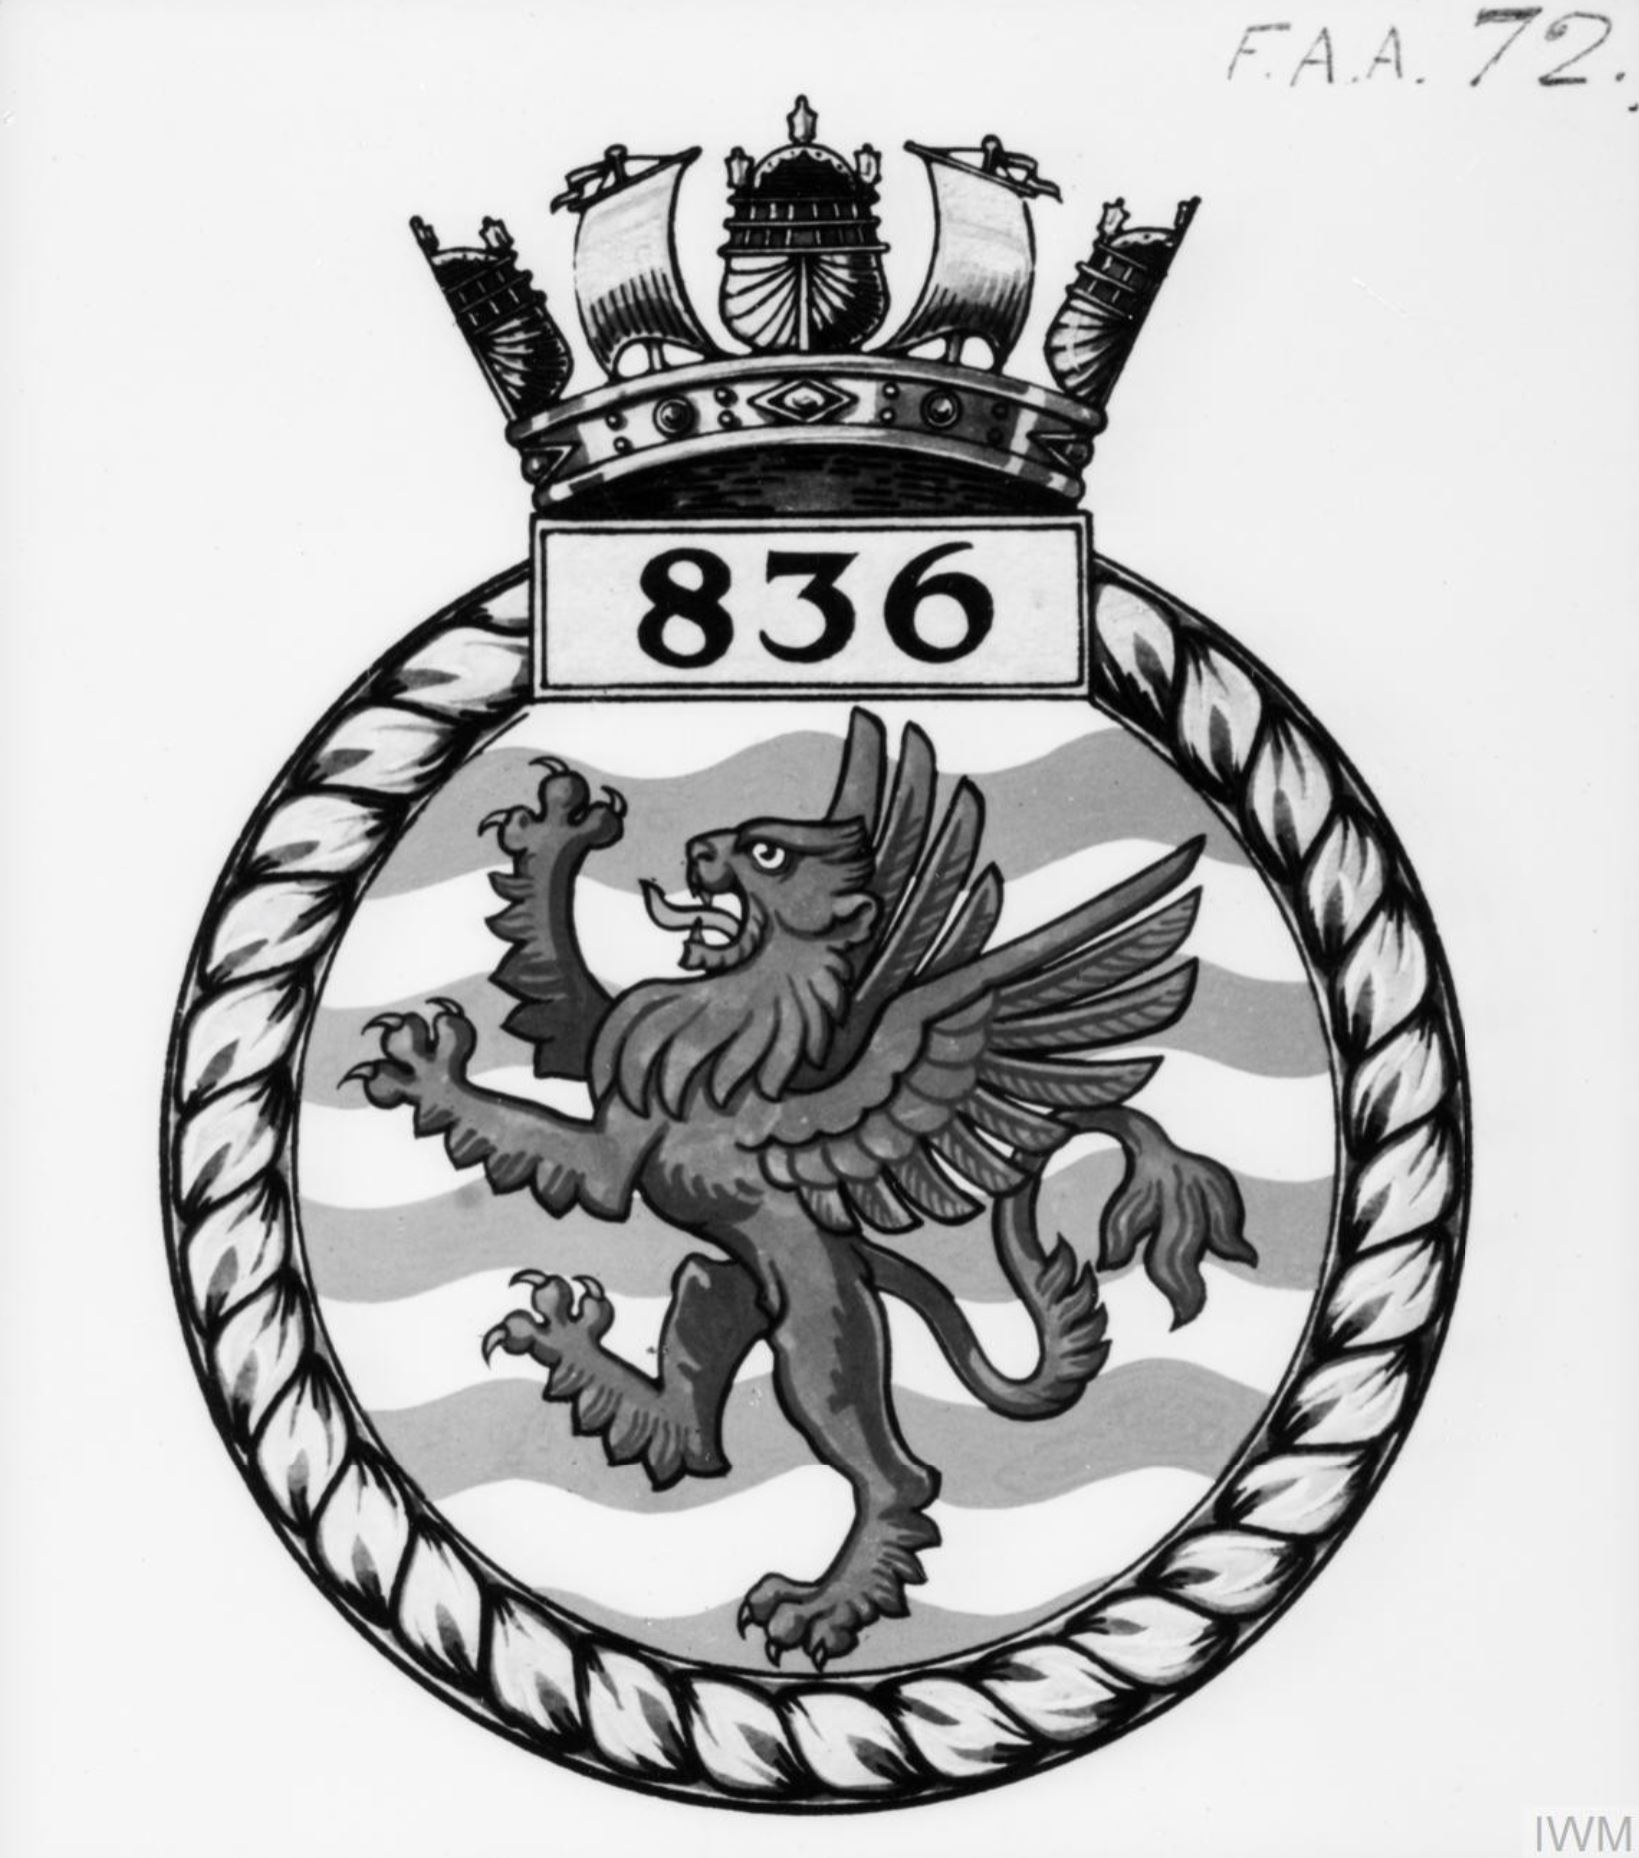 Fleet Air Arm crest of 836 Squadron IWM A26785